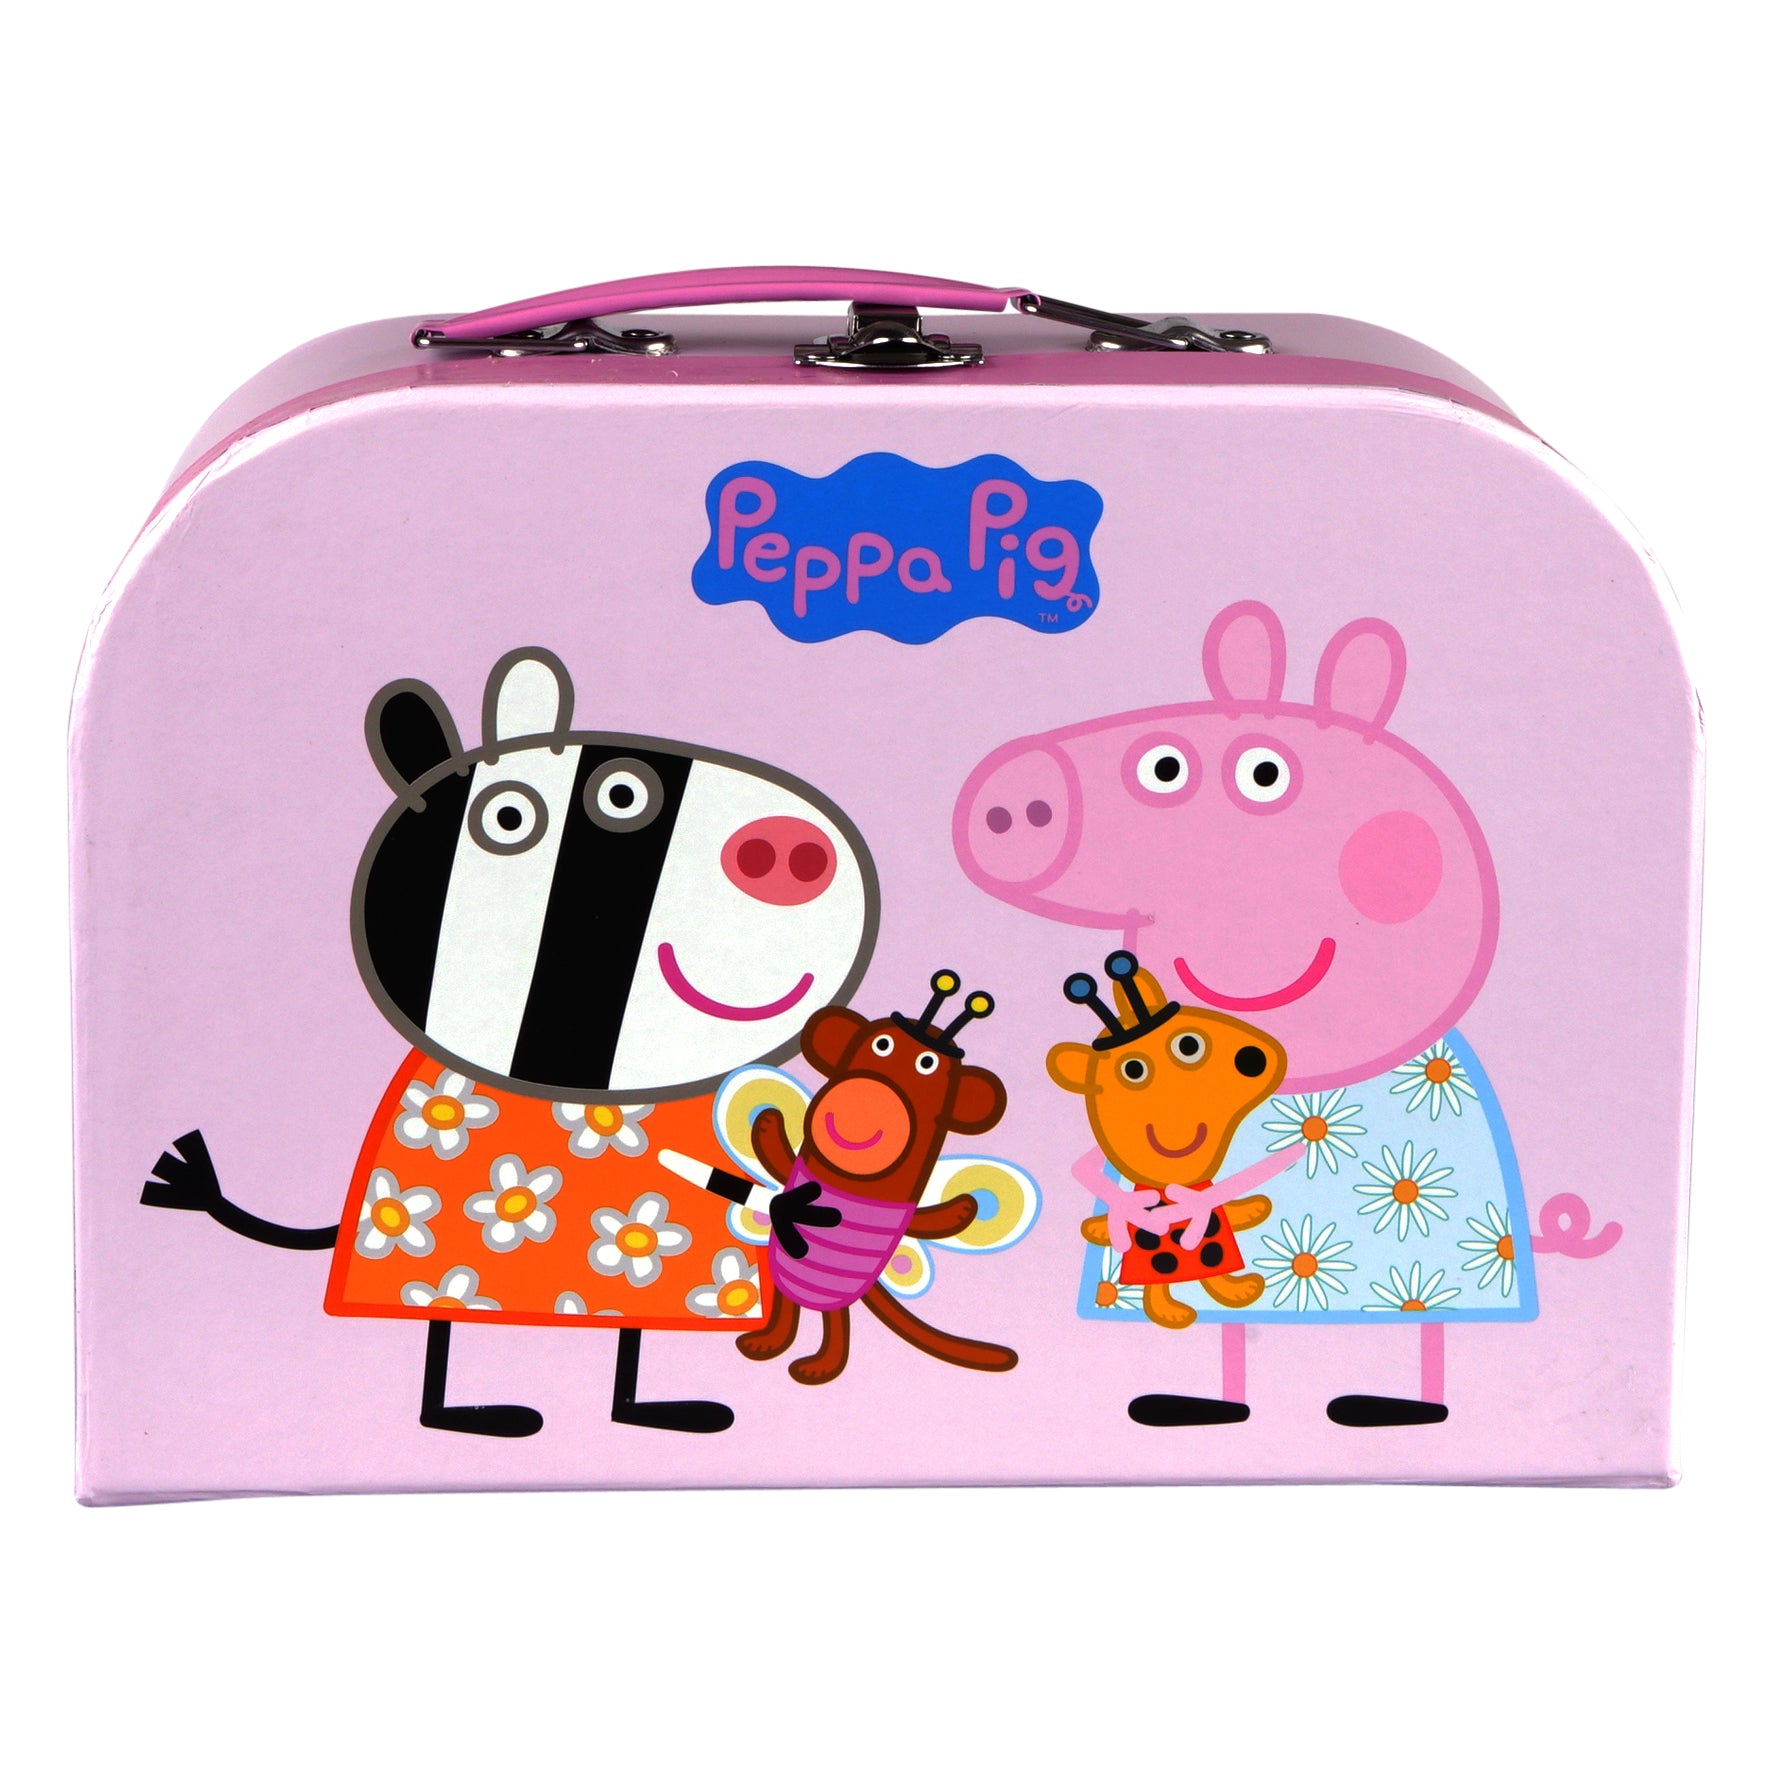 Kaufen Sie Peppa Pig - Puzzle-Koffer - Peppa Teddy zu Großhandelspreisen